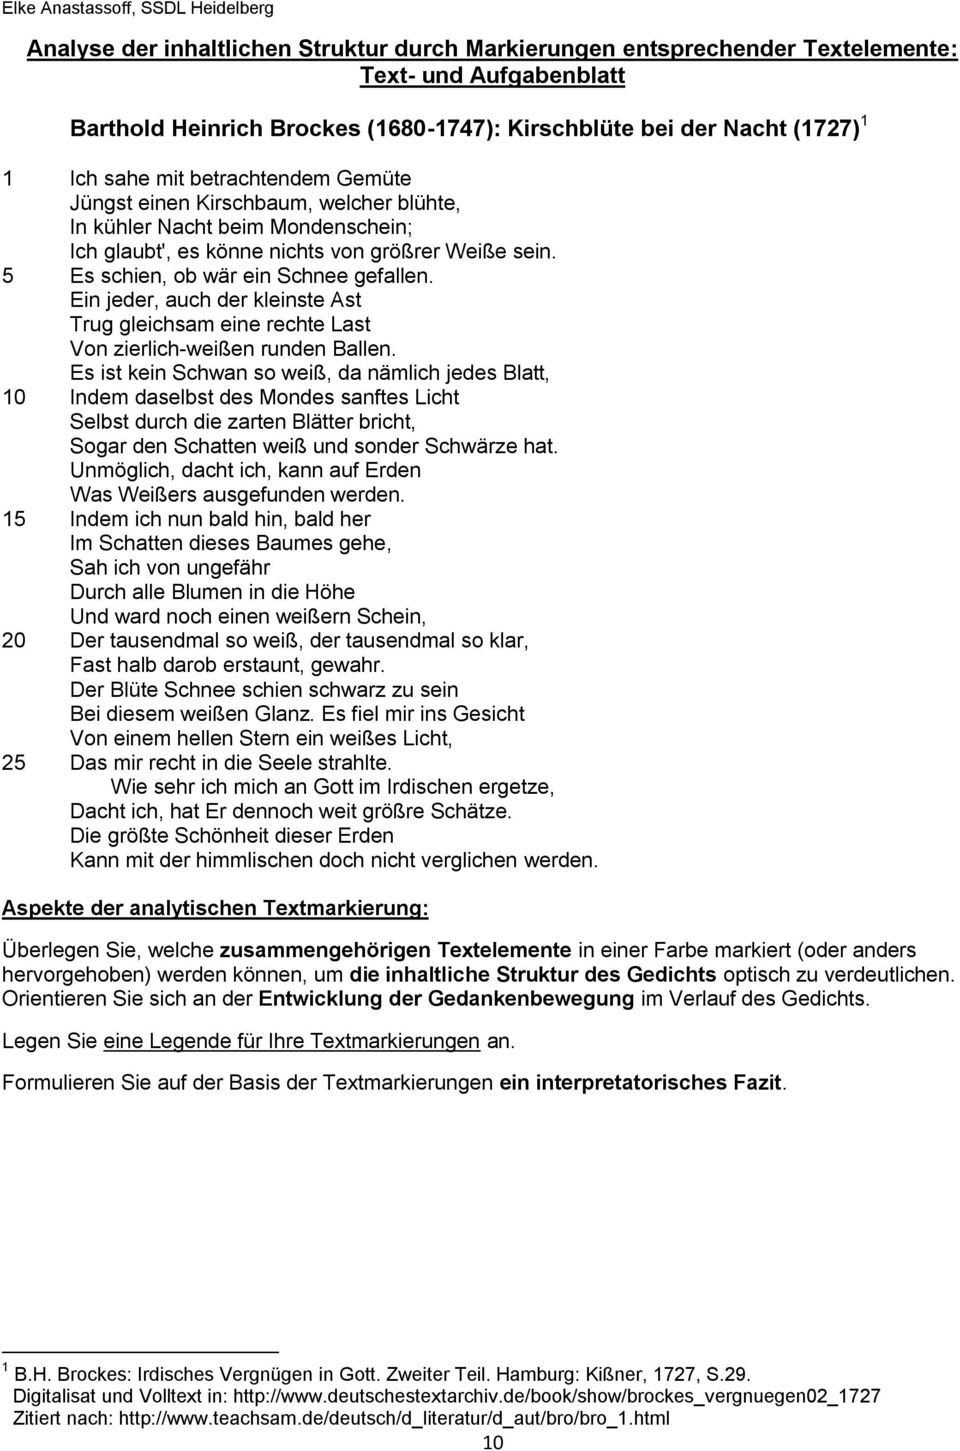 Zur Methodik Der Lyrikinterpretation Wege Der Texterschliessung 2 Materialteil Pdf Free Download